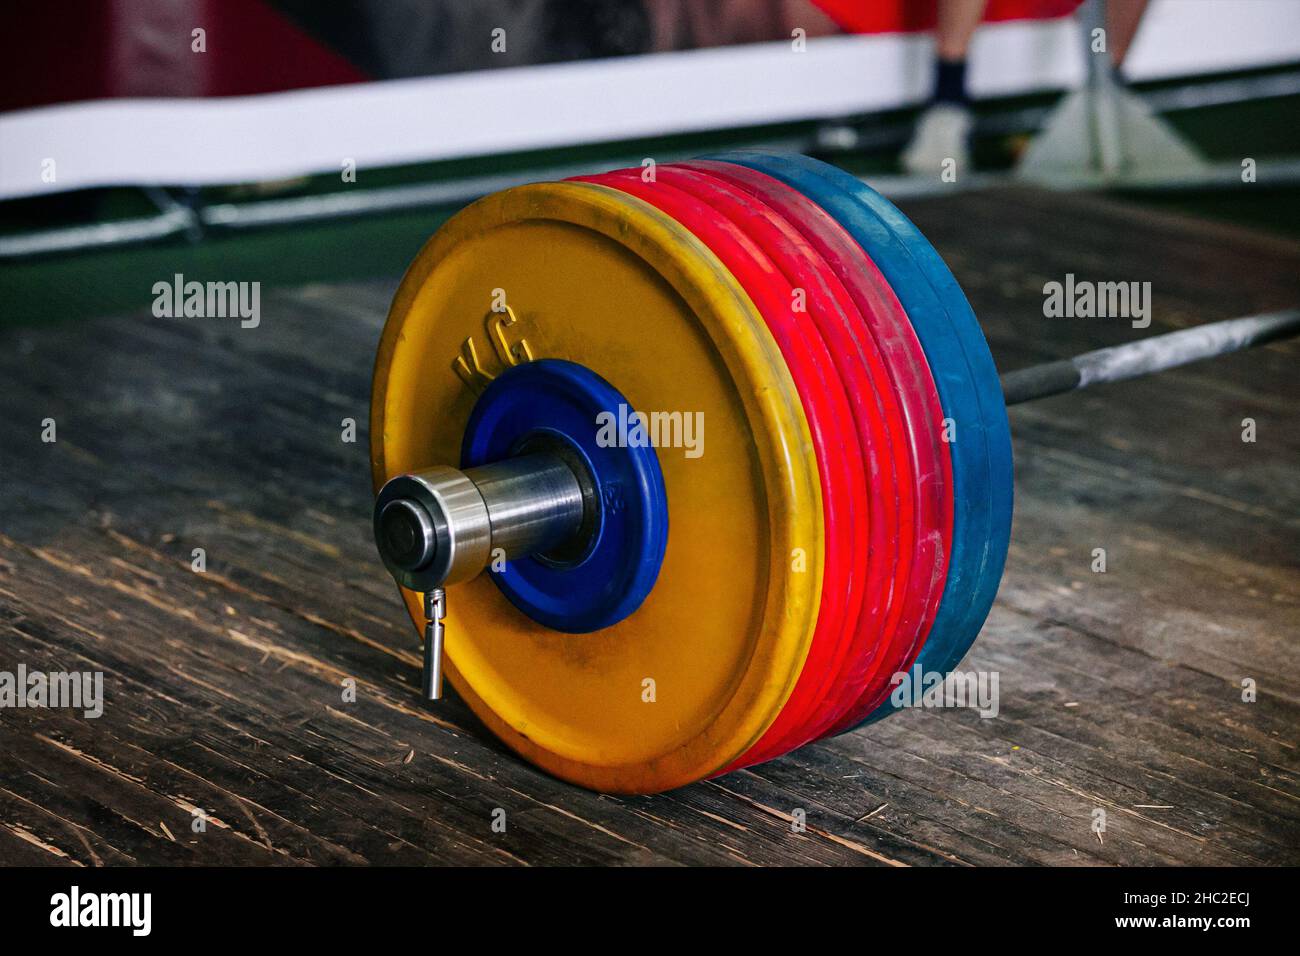 300 kg barbell for deadlift exercise on platform Stock Photo